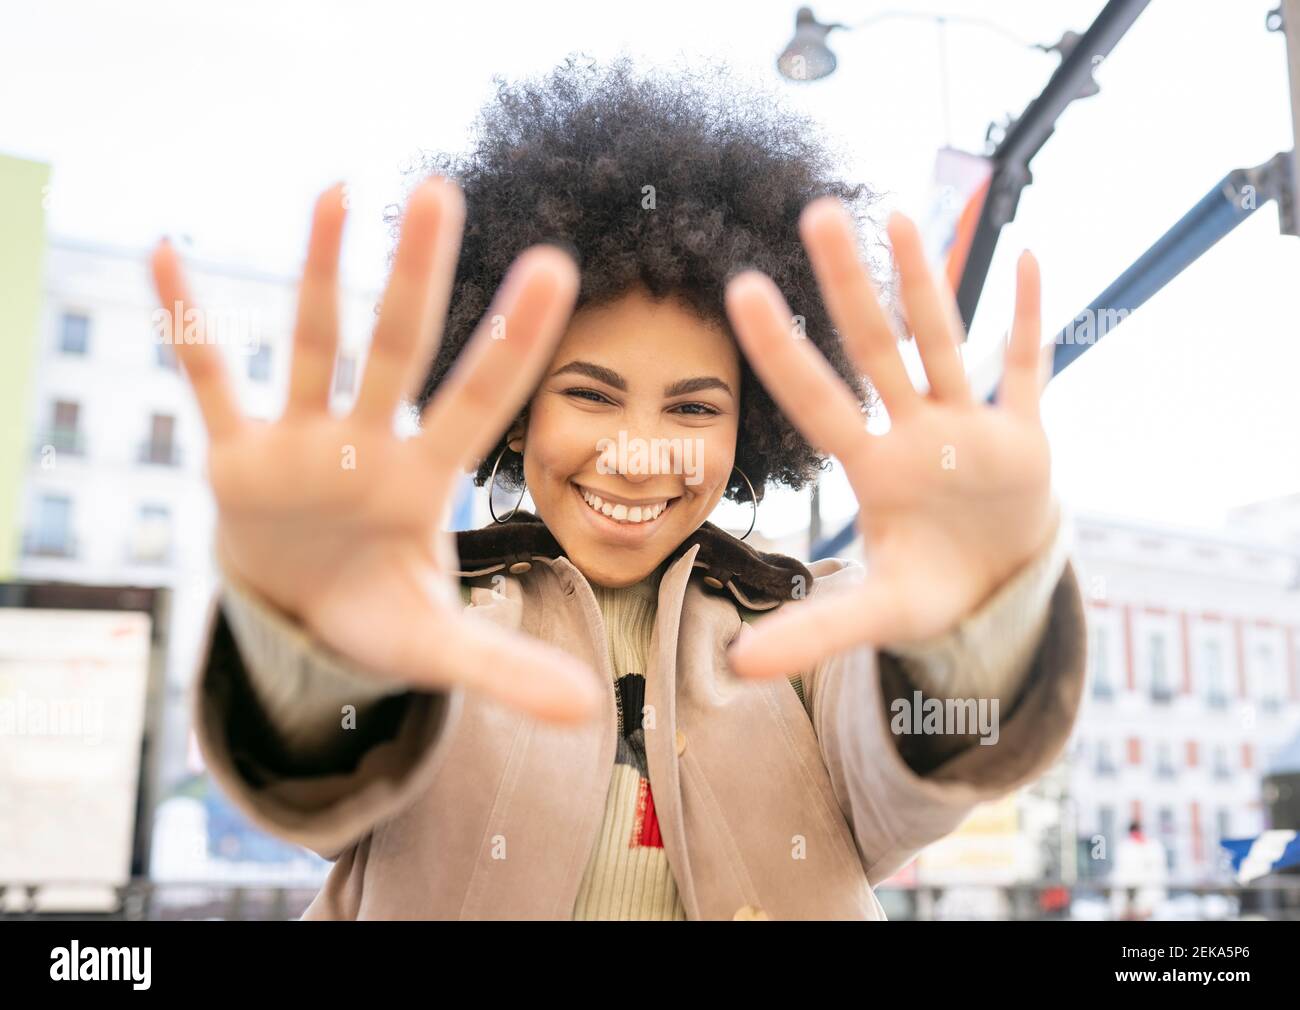 Lächelnde Frau mit Stop-Geste, während sie im Freien steht Stockfoto